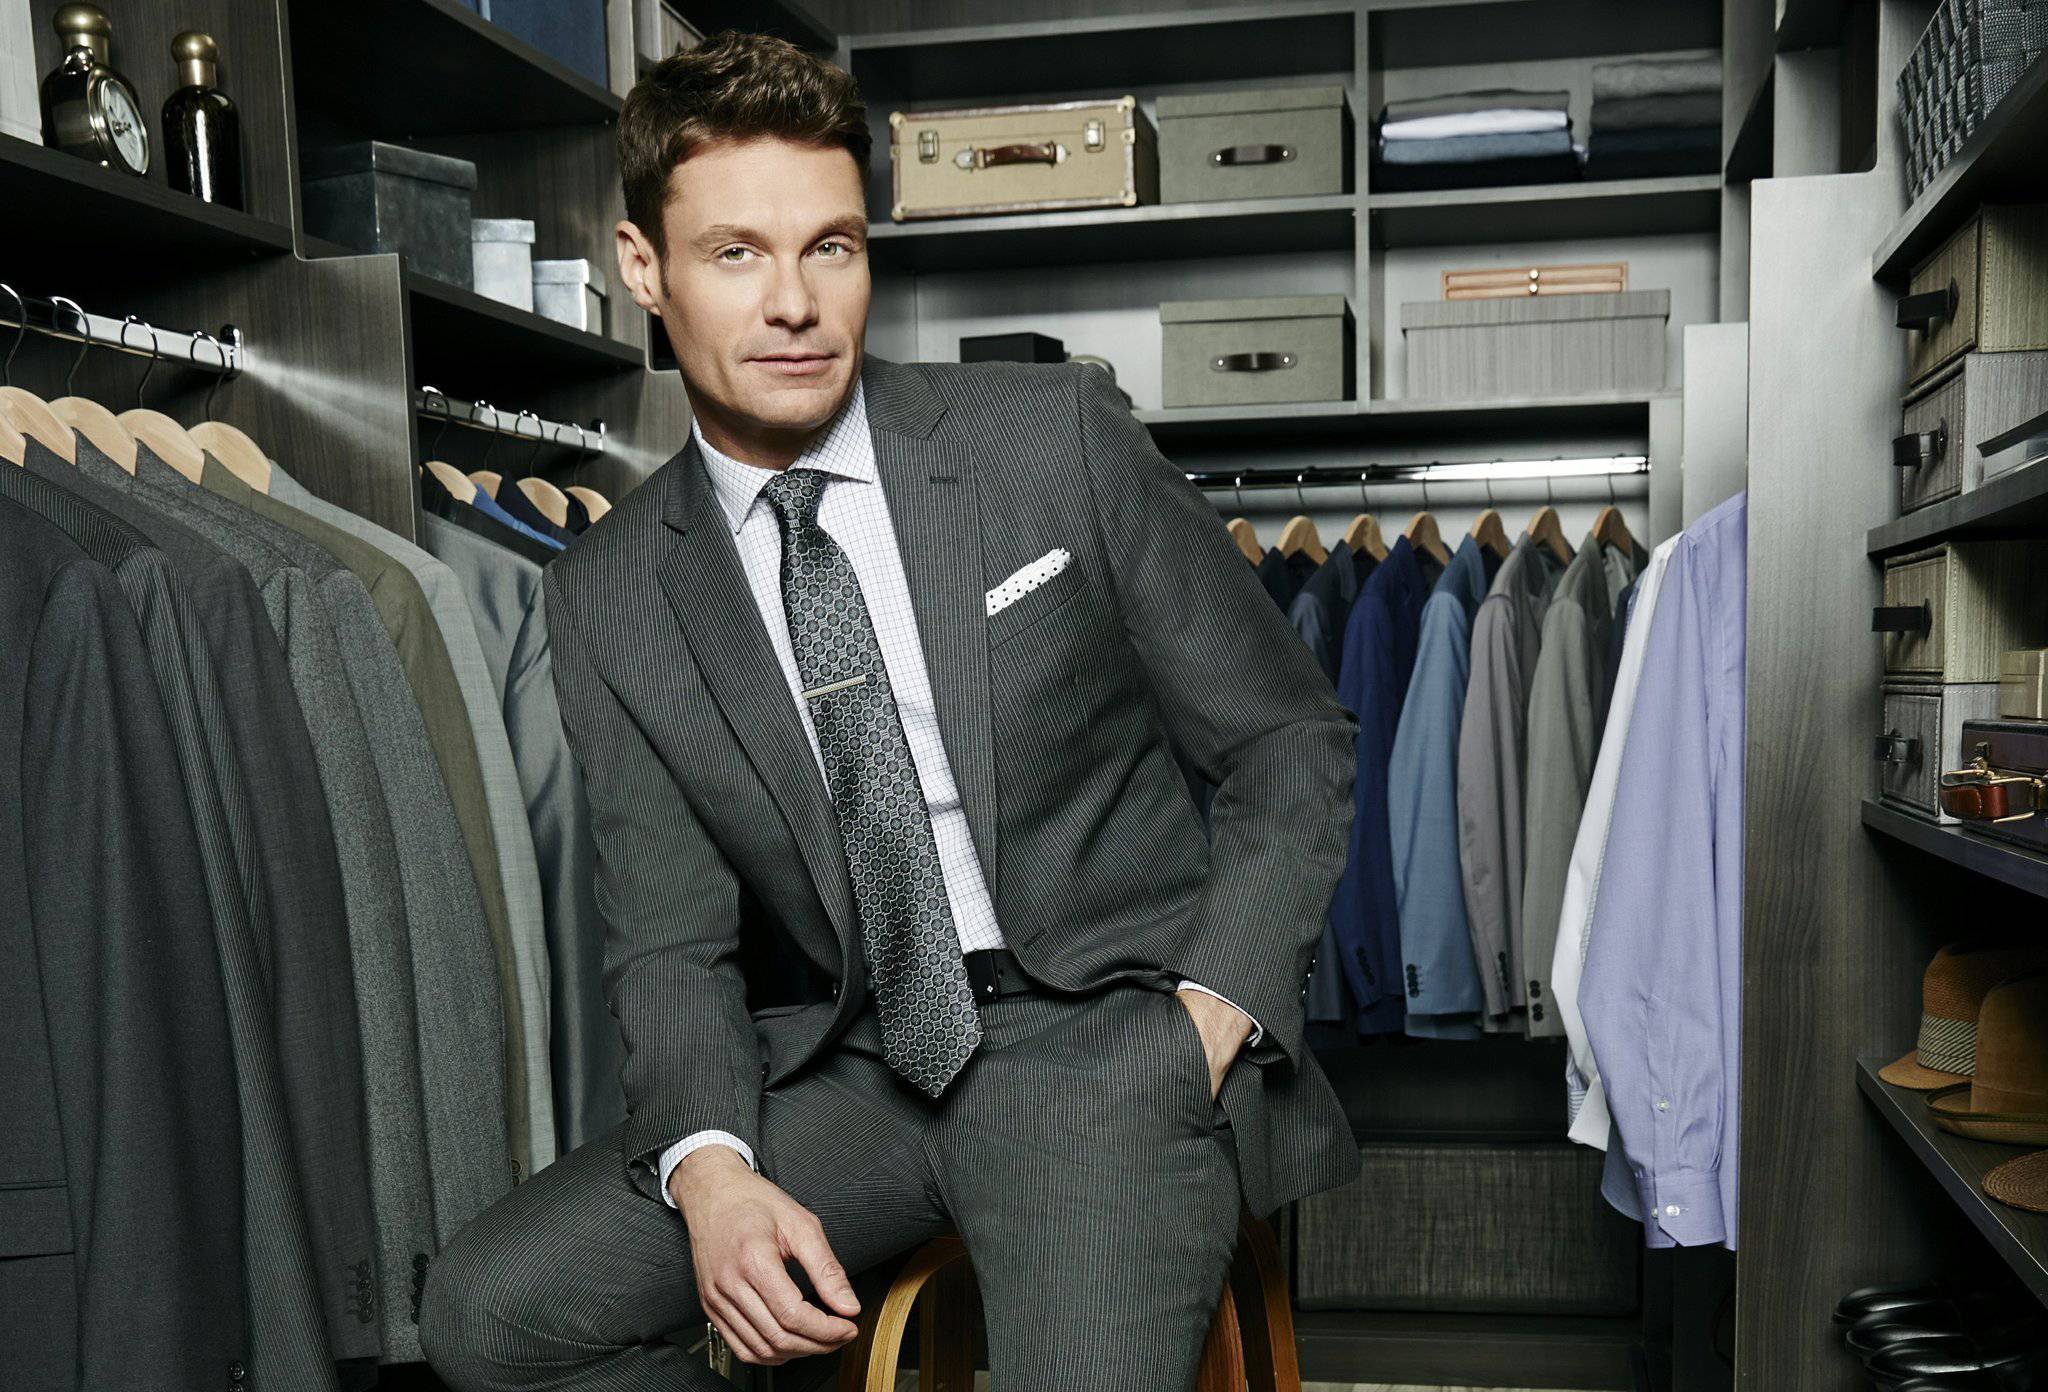 Ryan Seacrest Macy's Menswear line